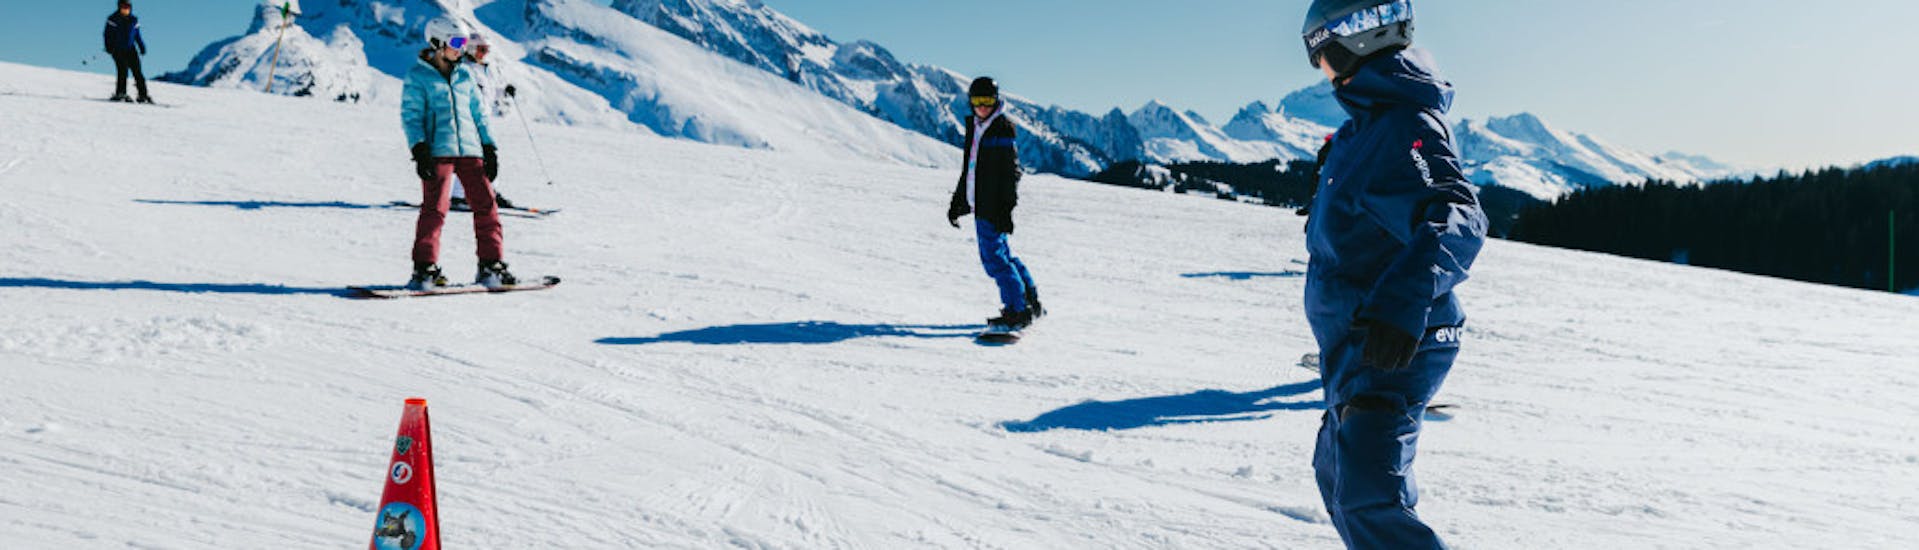 Snowboardkurs ab 8 Jahren ohne Erfahrung mit Evolution 2 Saint-Gervais.